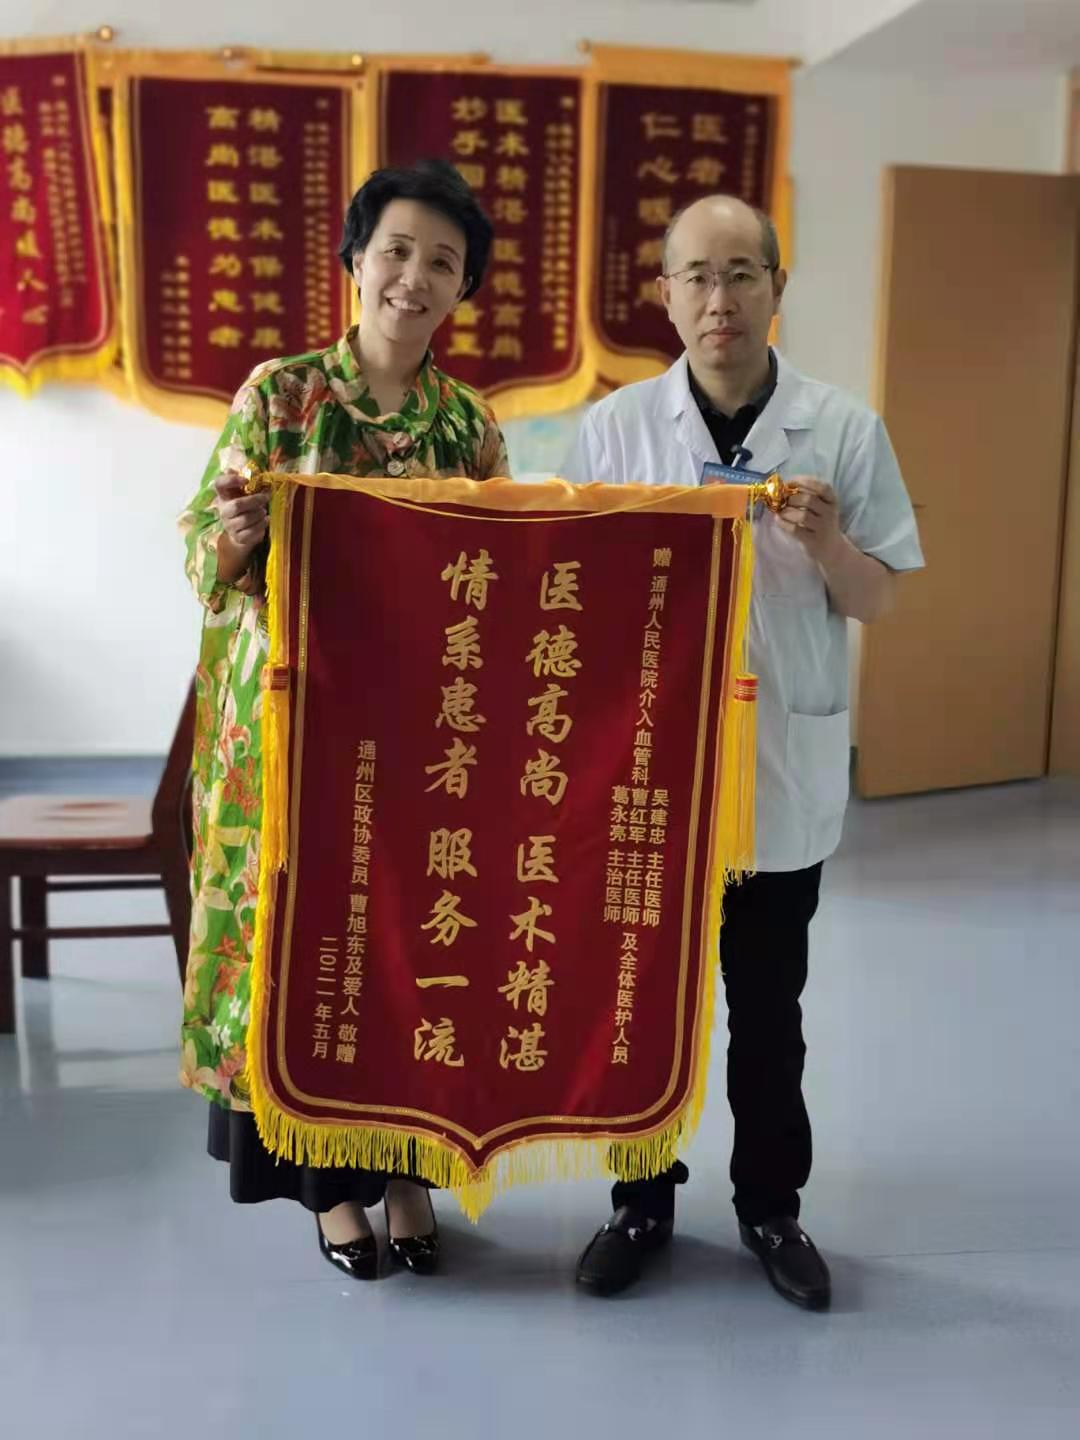 我院姚宜医生收到锦旗一面_-上海和平眼科医院